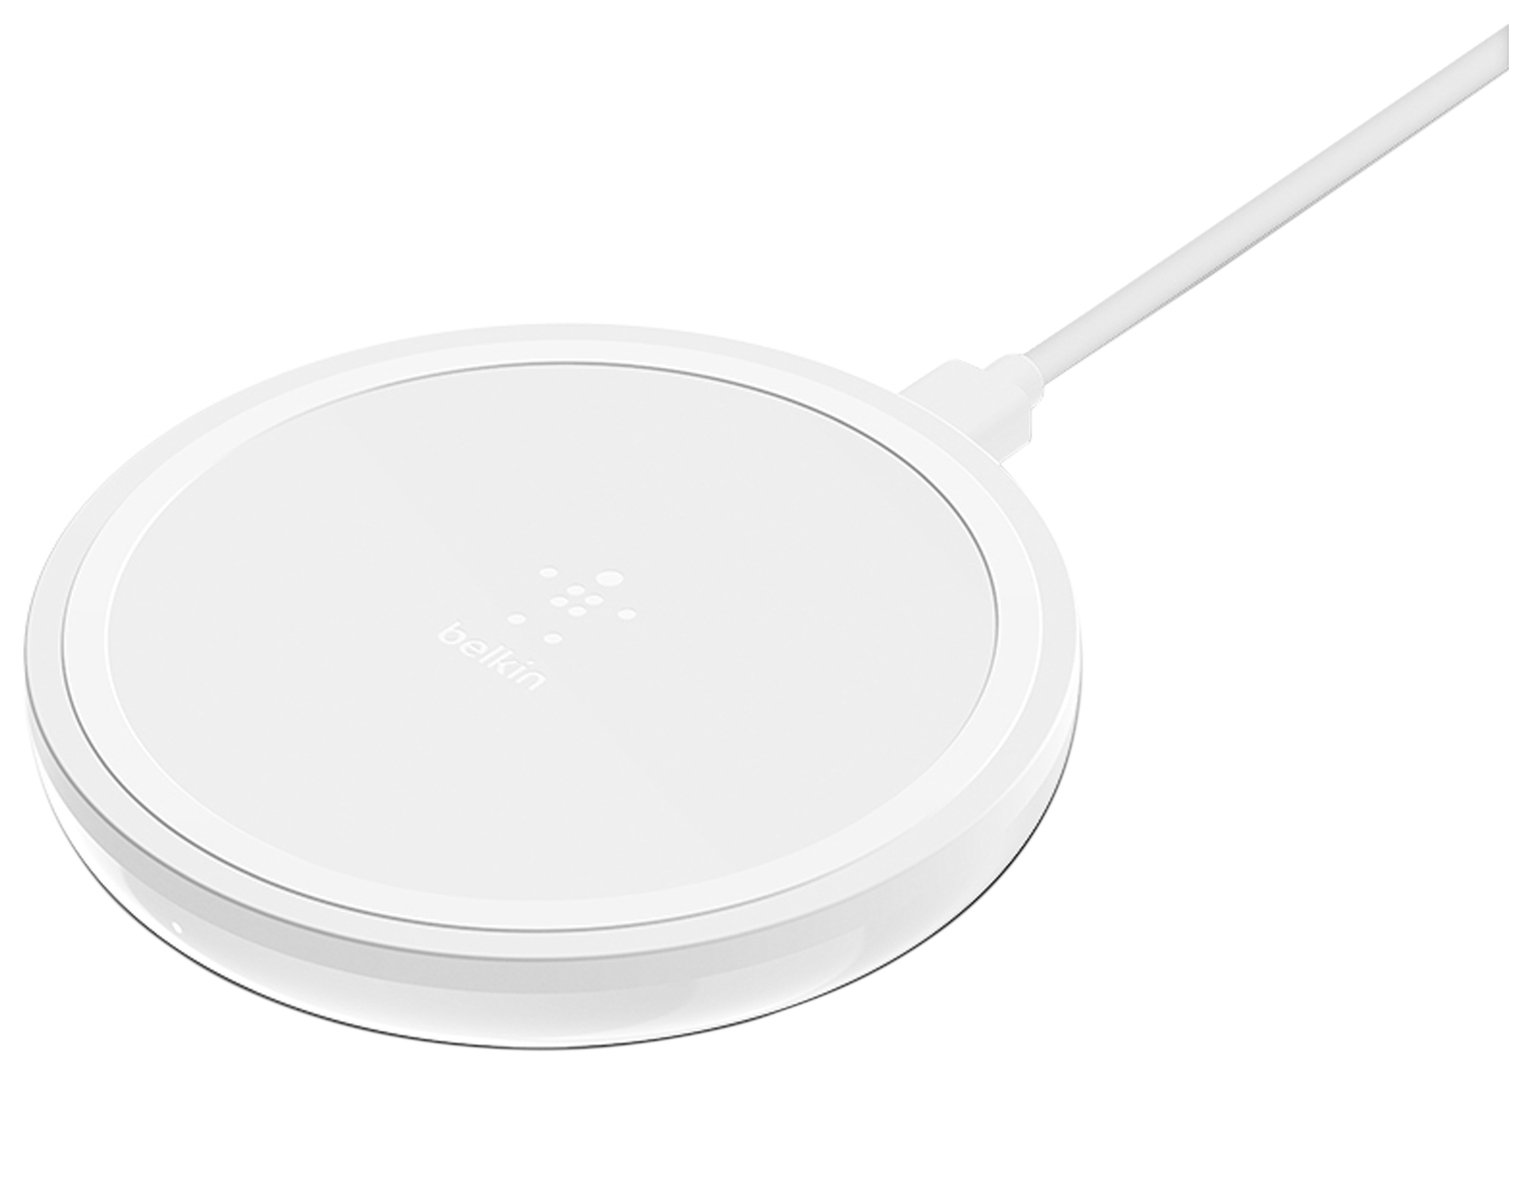 Belkin Qi Certified 10W Wireless Charging Pad - White